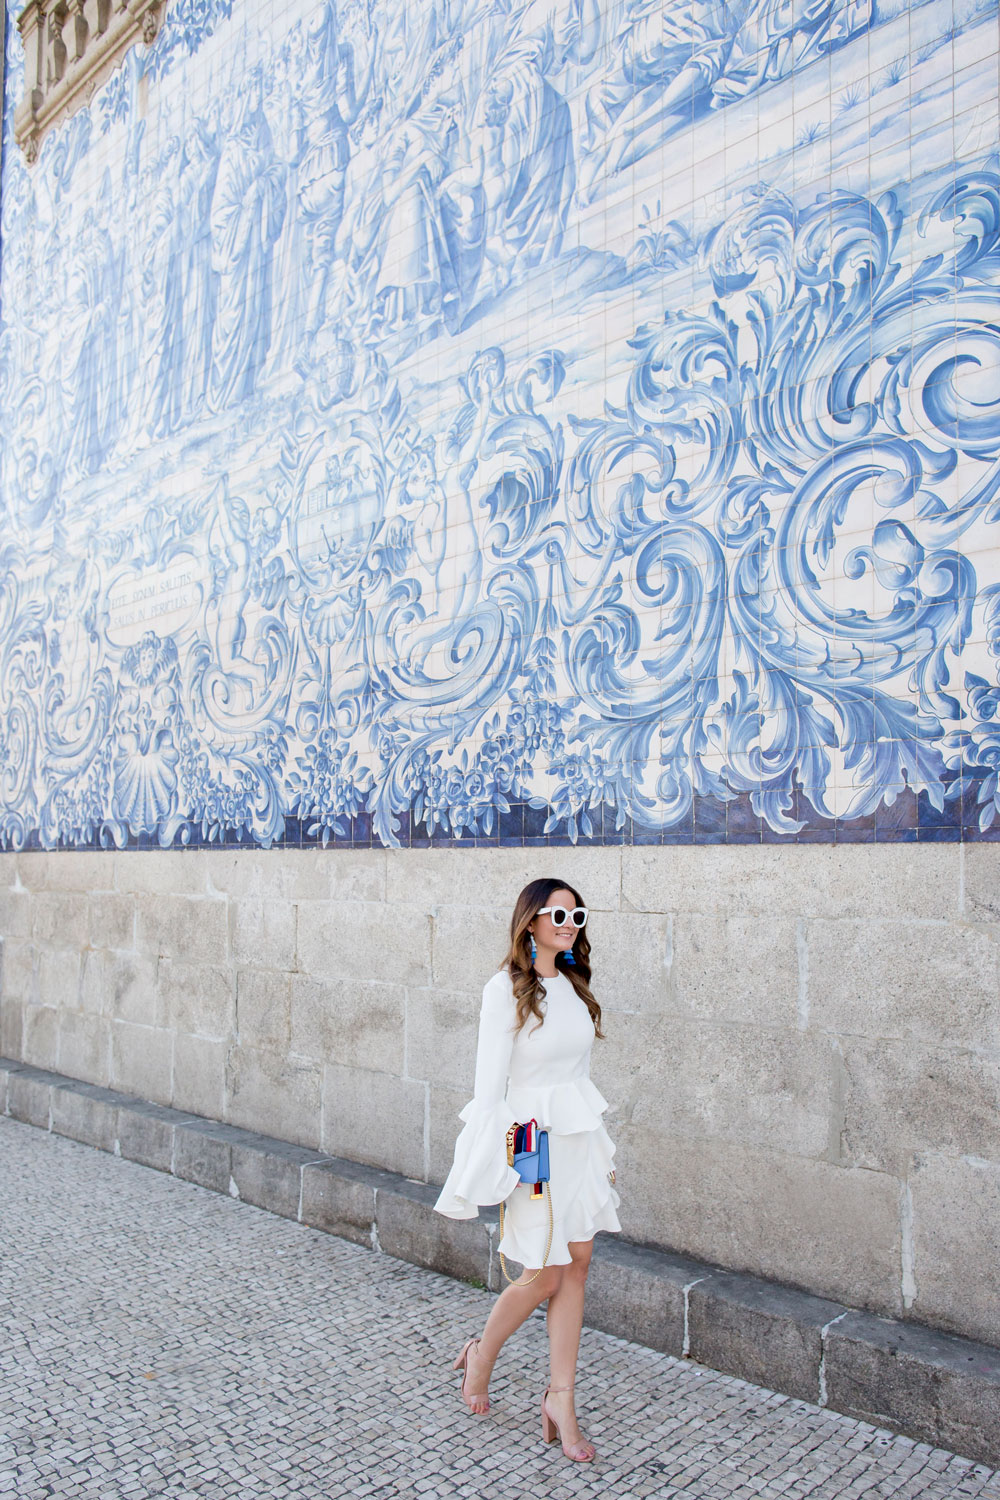 Porto Church Blue Tile Facade